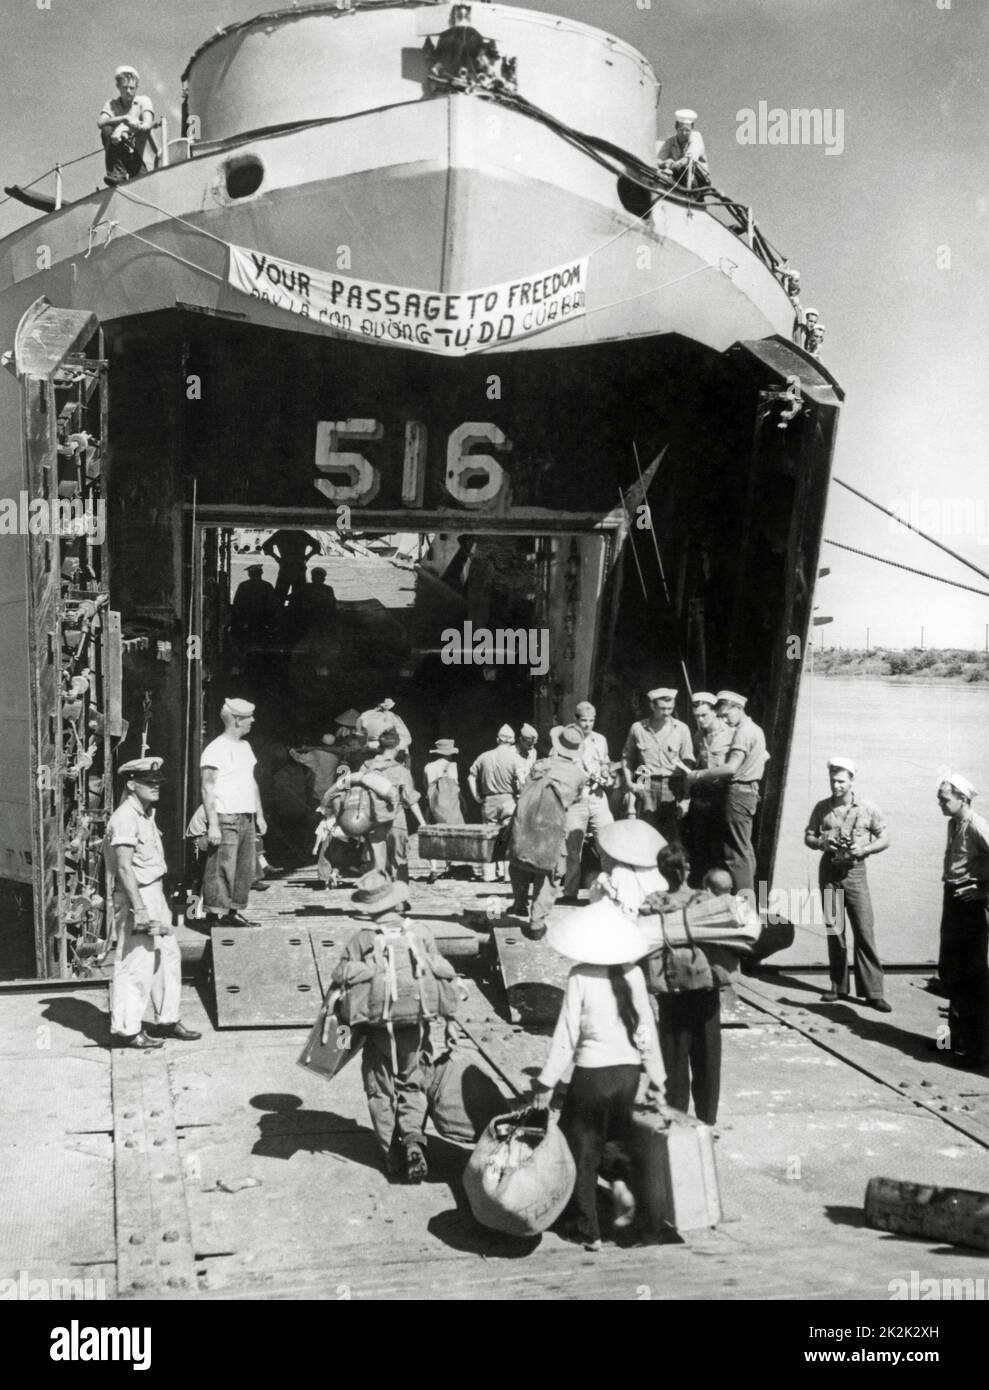 Alla fine della guerra d'Indocina, centinaia di rifugiati vietnamiti imbarcano una nave della Marina degli Stati Uniti per recarsi nella Repubblica del Vietnam. Questa operazione sarà chiamata "operazione passaggio alla libertà". Ottobre 1954 Foto Stock